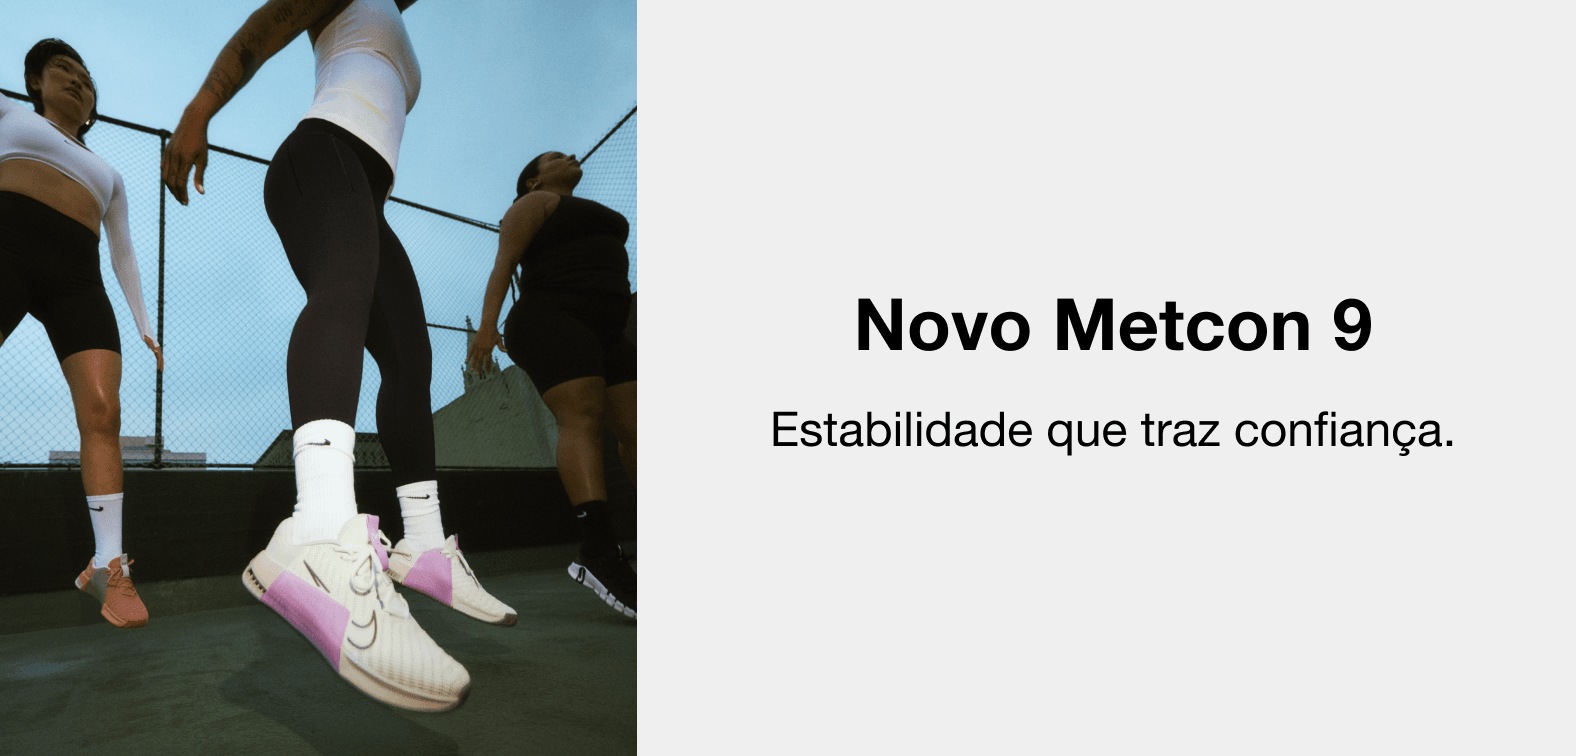 Produtos tamanho M 40 / F 39.5 de moda casual unissex acima de R$ 500 reais  - Nike - Ofertas e Preços